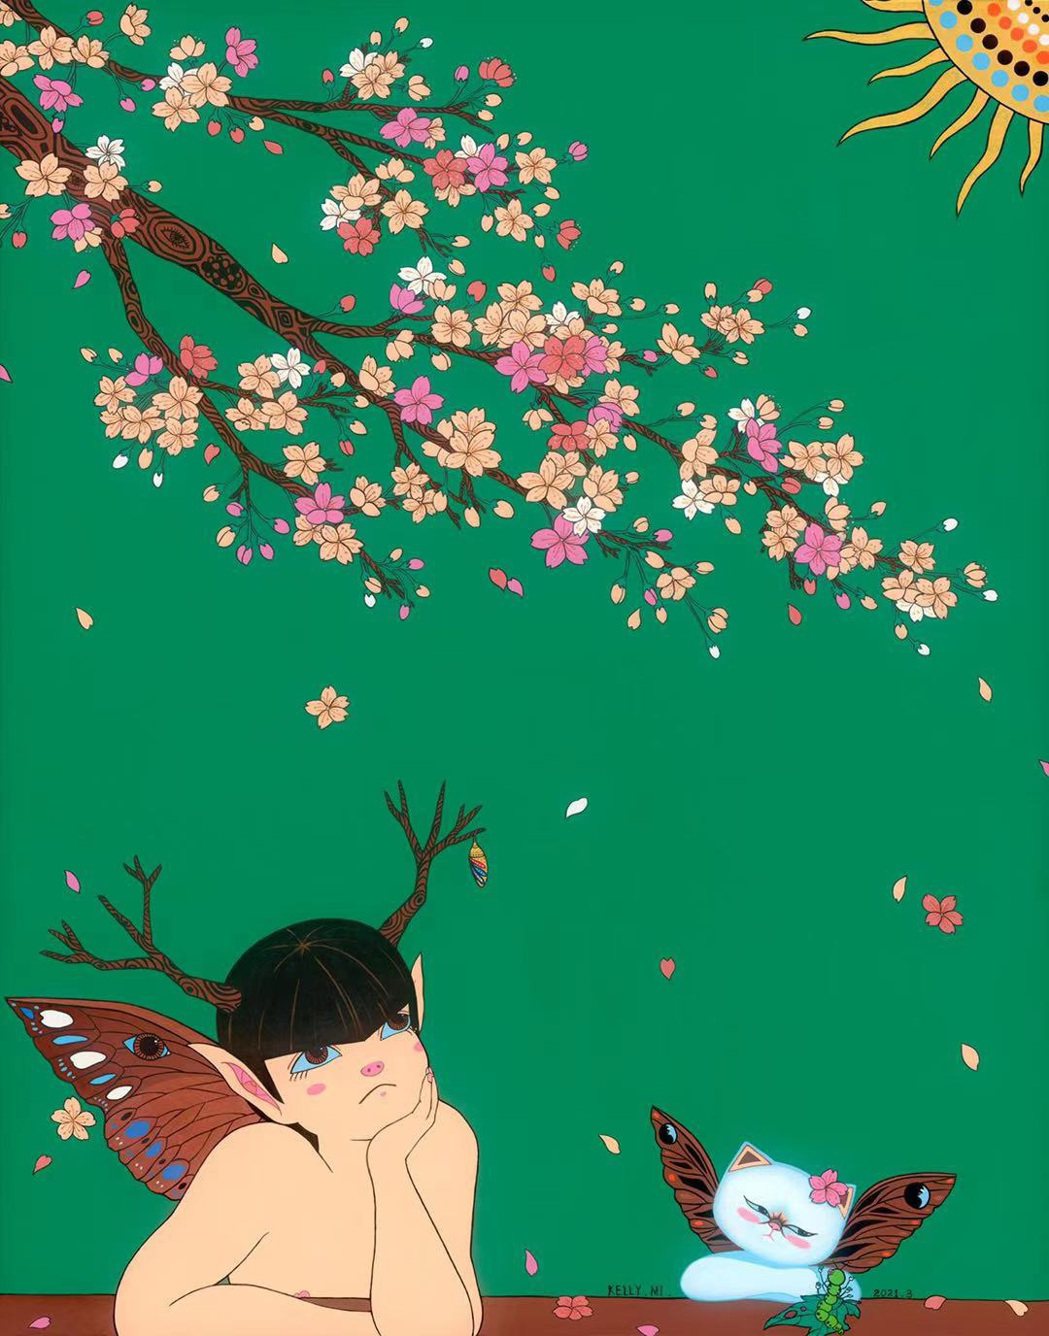 明星藝術家米凱莉疫情期間創作畫作「我等到花兒也謝了」之一「等待」，期待大家破繭而...